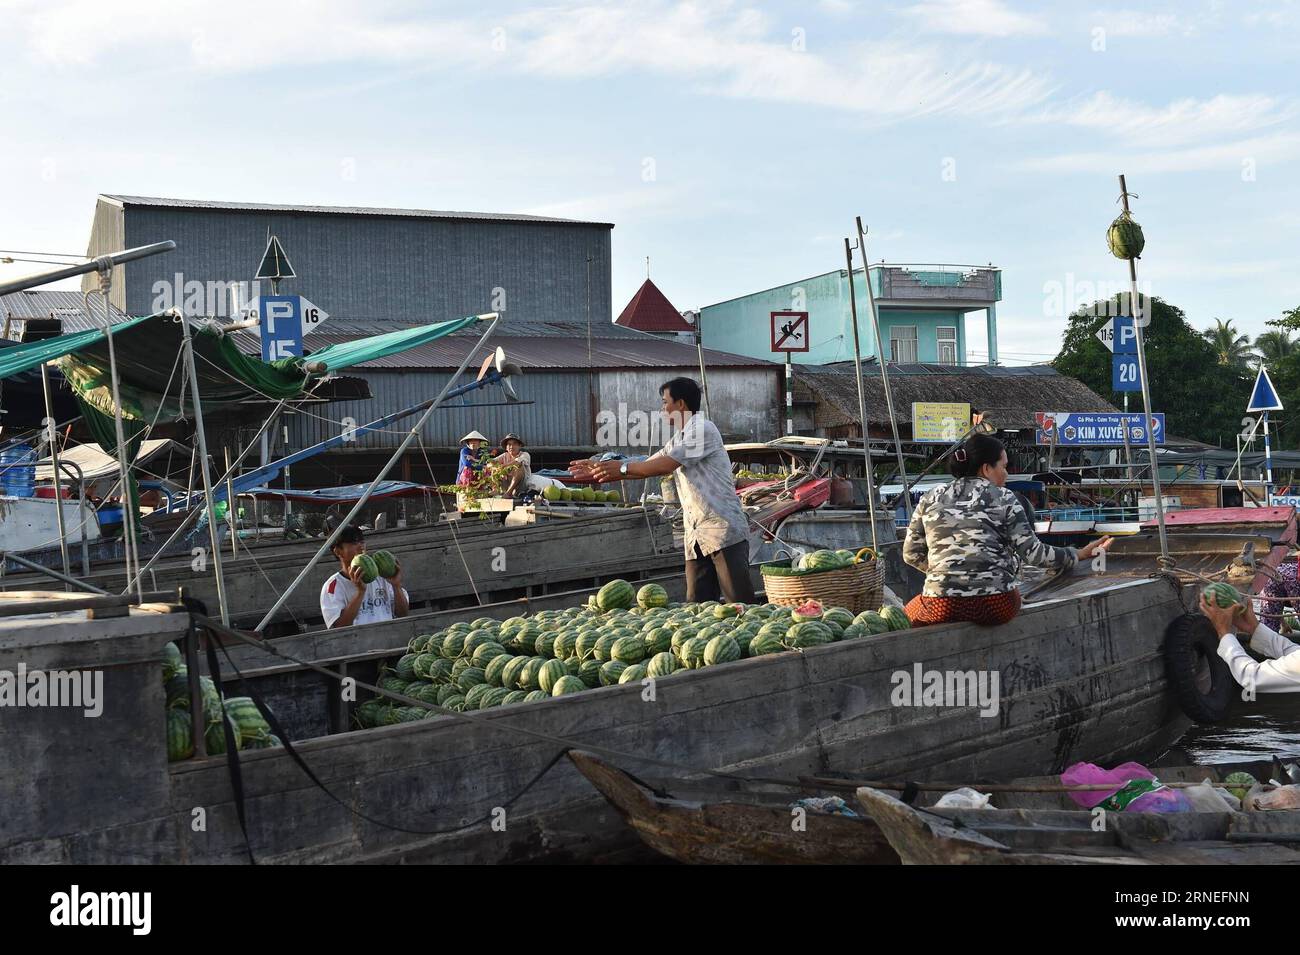 (160621) -- CAN THO, 21 juin 2016 -- les vendeurs vietnamiens chargent des pastèques dans le plus grand marché flottant de CAN Tho, Cai rang, Vietnam, 21 juin 2016. CAN Tho, à environ 170 km de Ho Chin Minh-ville dans le delta du Mékong, est célèbre pour ses marchés flottants où les gens peuvent acheter des fruits, des produits agricoles et des collations.) VIETNAM-CAN THO-MARCHÉ FLOTTANT LexYanna PUBLICATIONxNOTxINxCHN 160621 CAN Tho juin 21 2016 vendeurs vietnamiens Charger des pastèques à CAN Tho S le plus grand marché flottant Cai Rank Vietnam juin 21 2016 CAN Tho environ 170 km de Ho Chin Minh ville dans le delta du Mékong EST célèbre pour son Float Banque D'Images